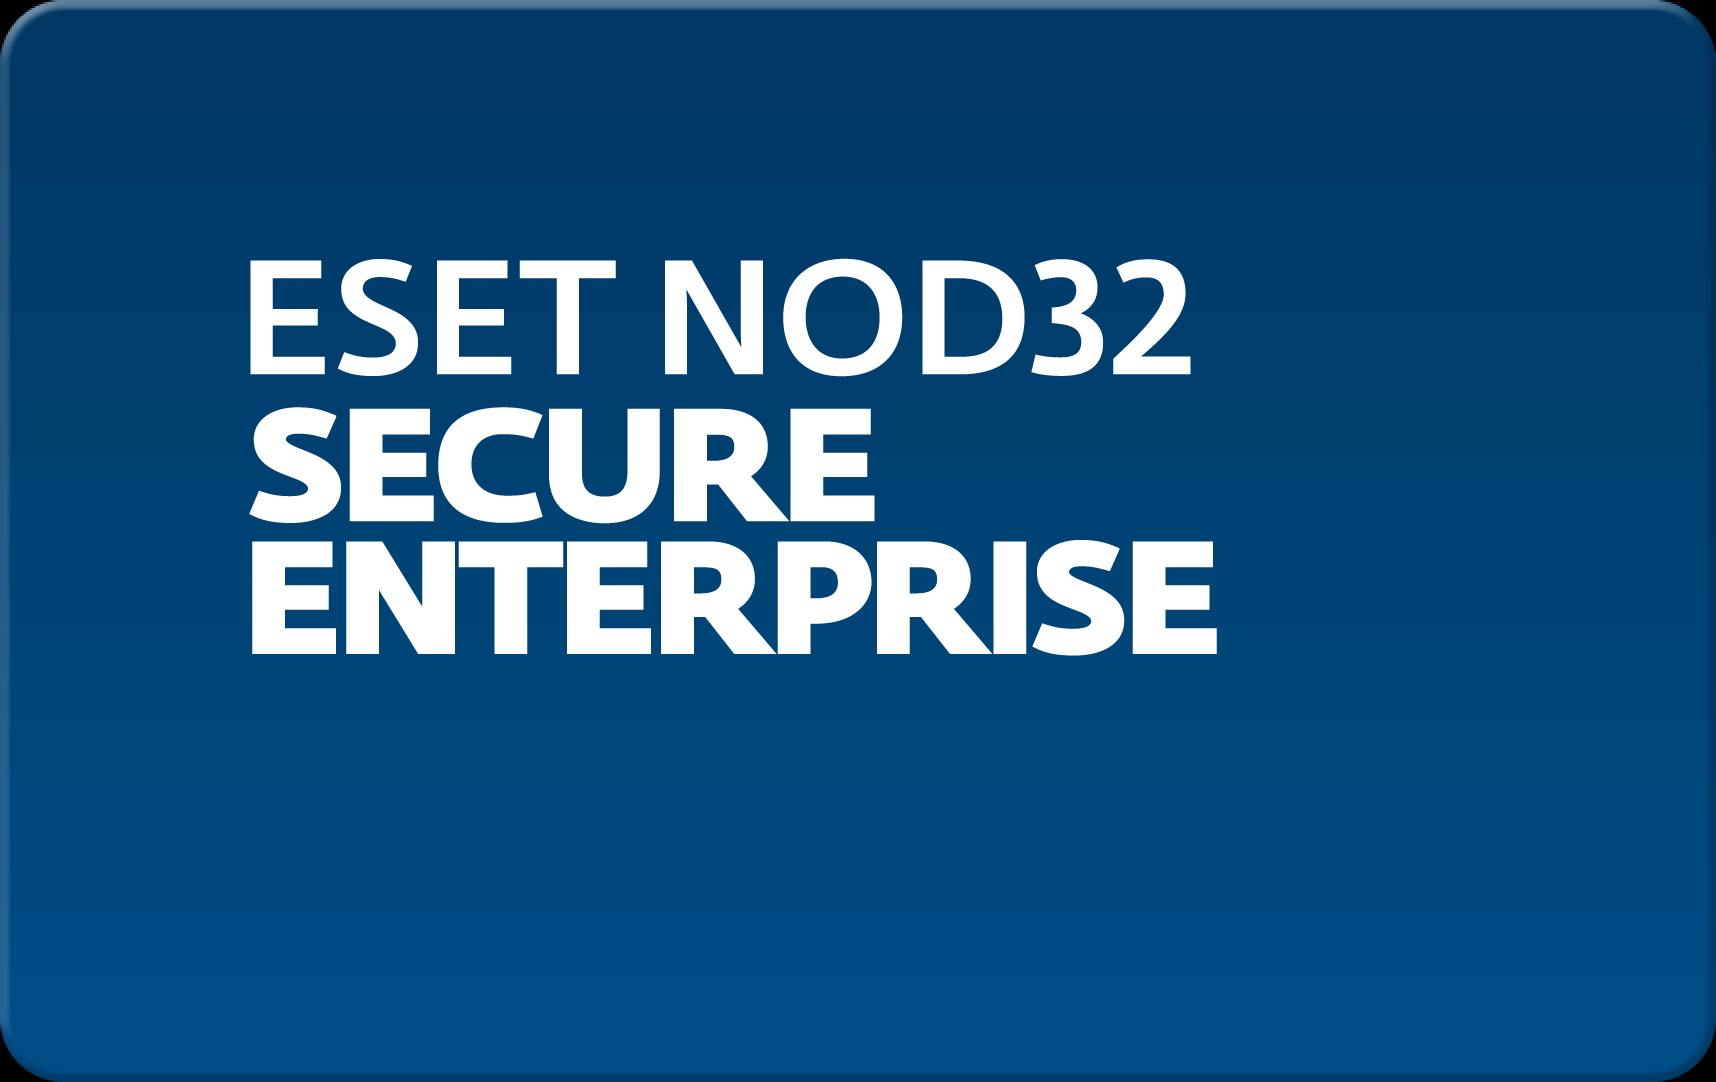        Eset NOD32 Secure Enterprise  170  NOD32-ESE-NS-1-170  #1